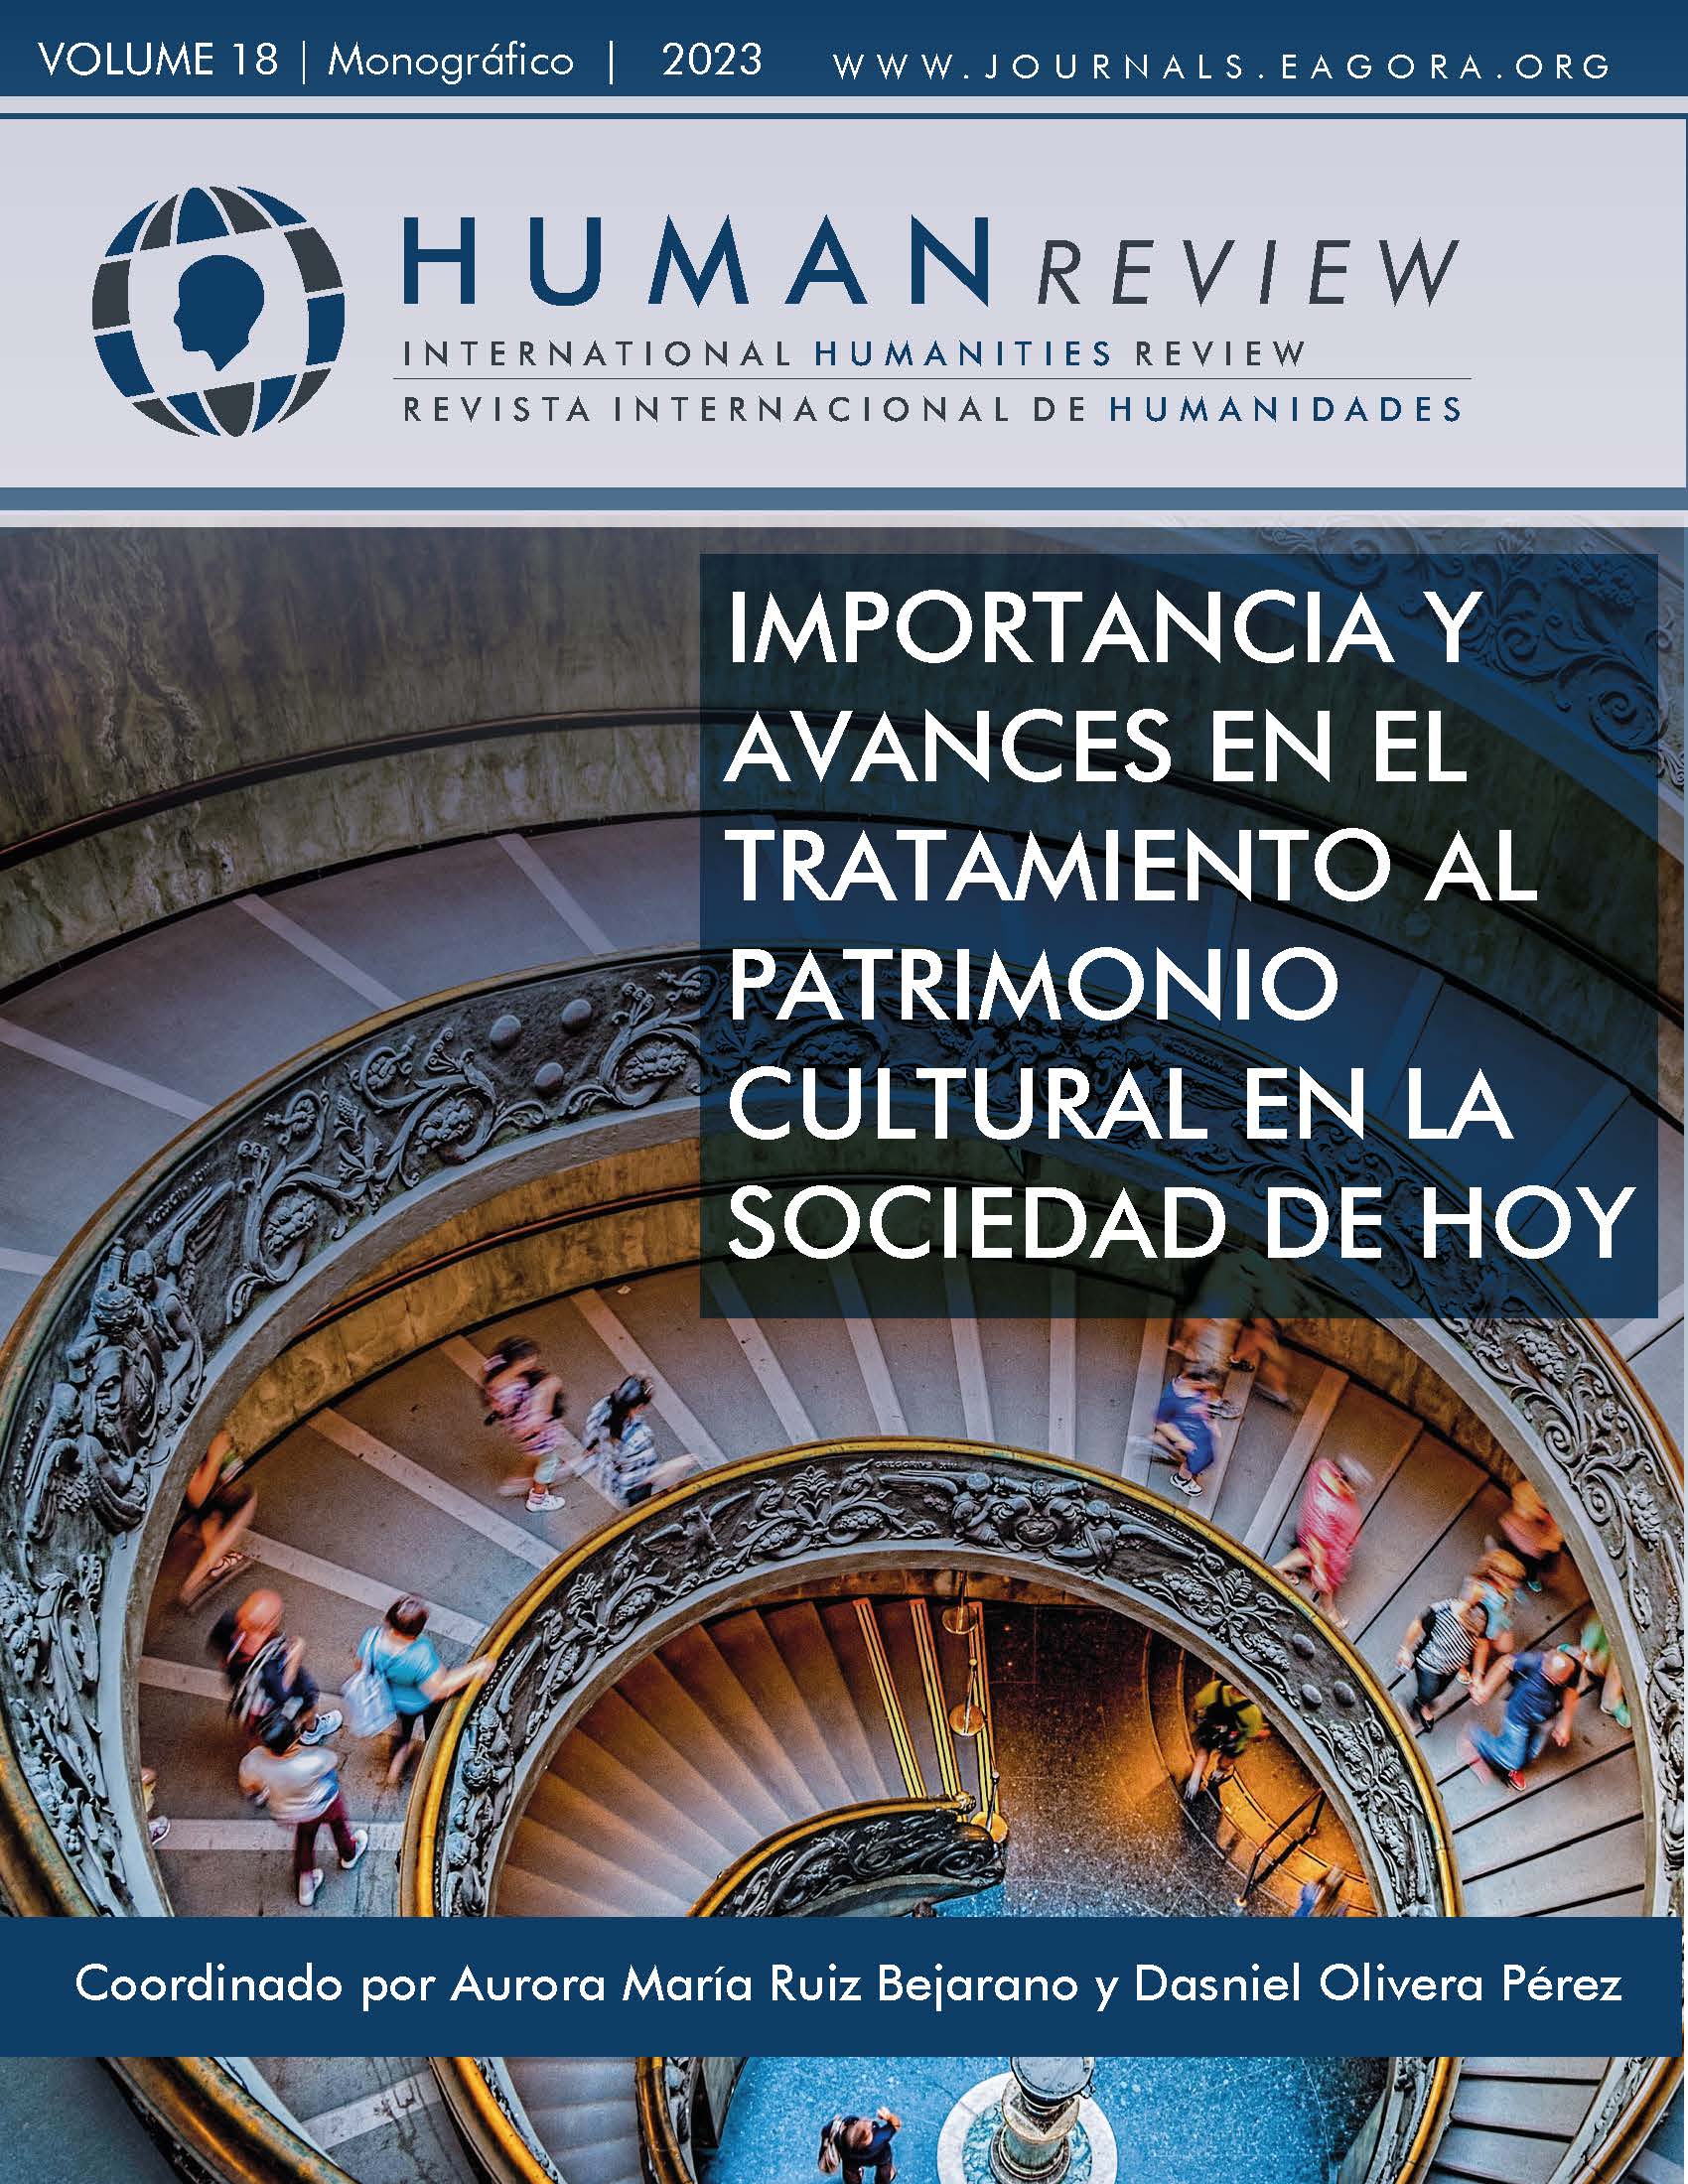 					Ver Vol. 18 Núm. 2 (2023): Monográfico: "Importancia y avances en el tratamiento al patrimonio cultural en la sociedad de hoy"
				